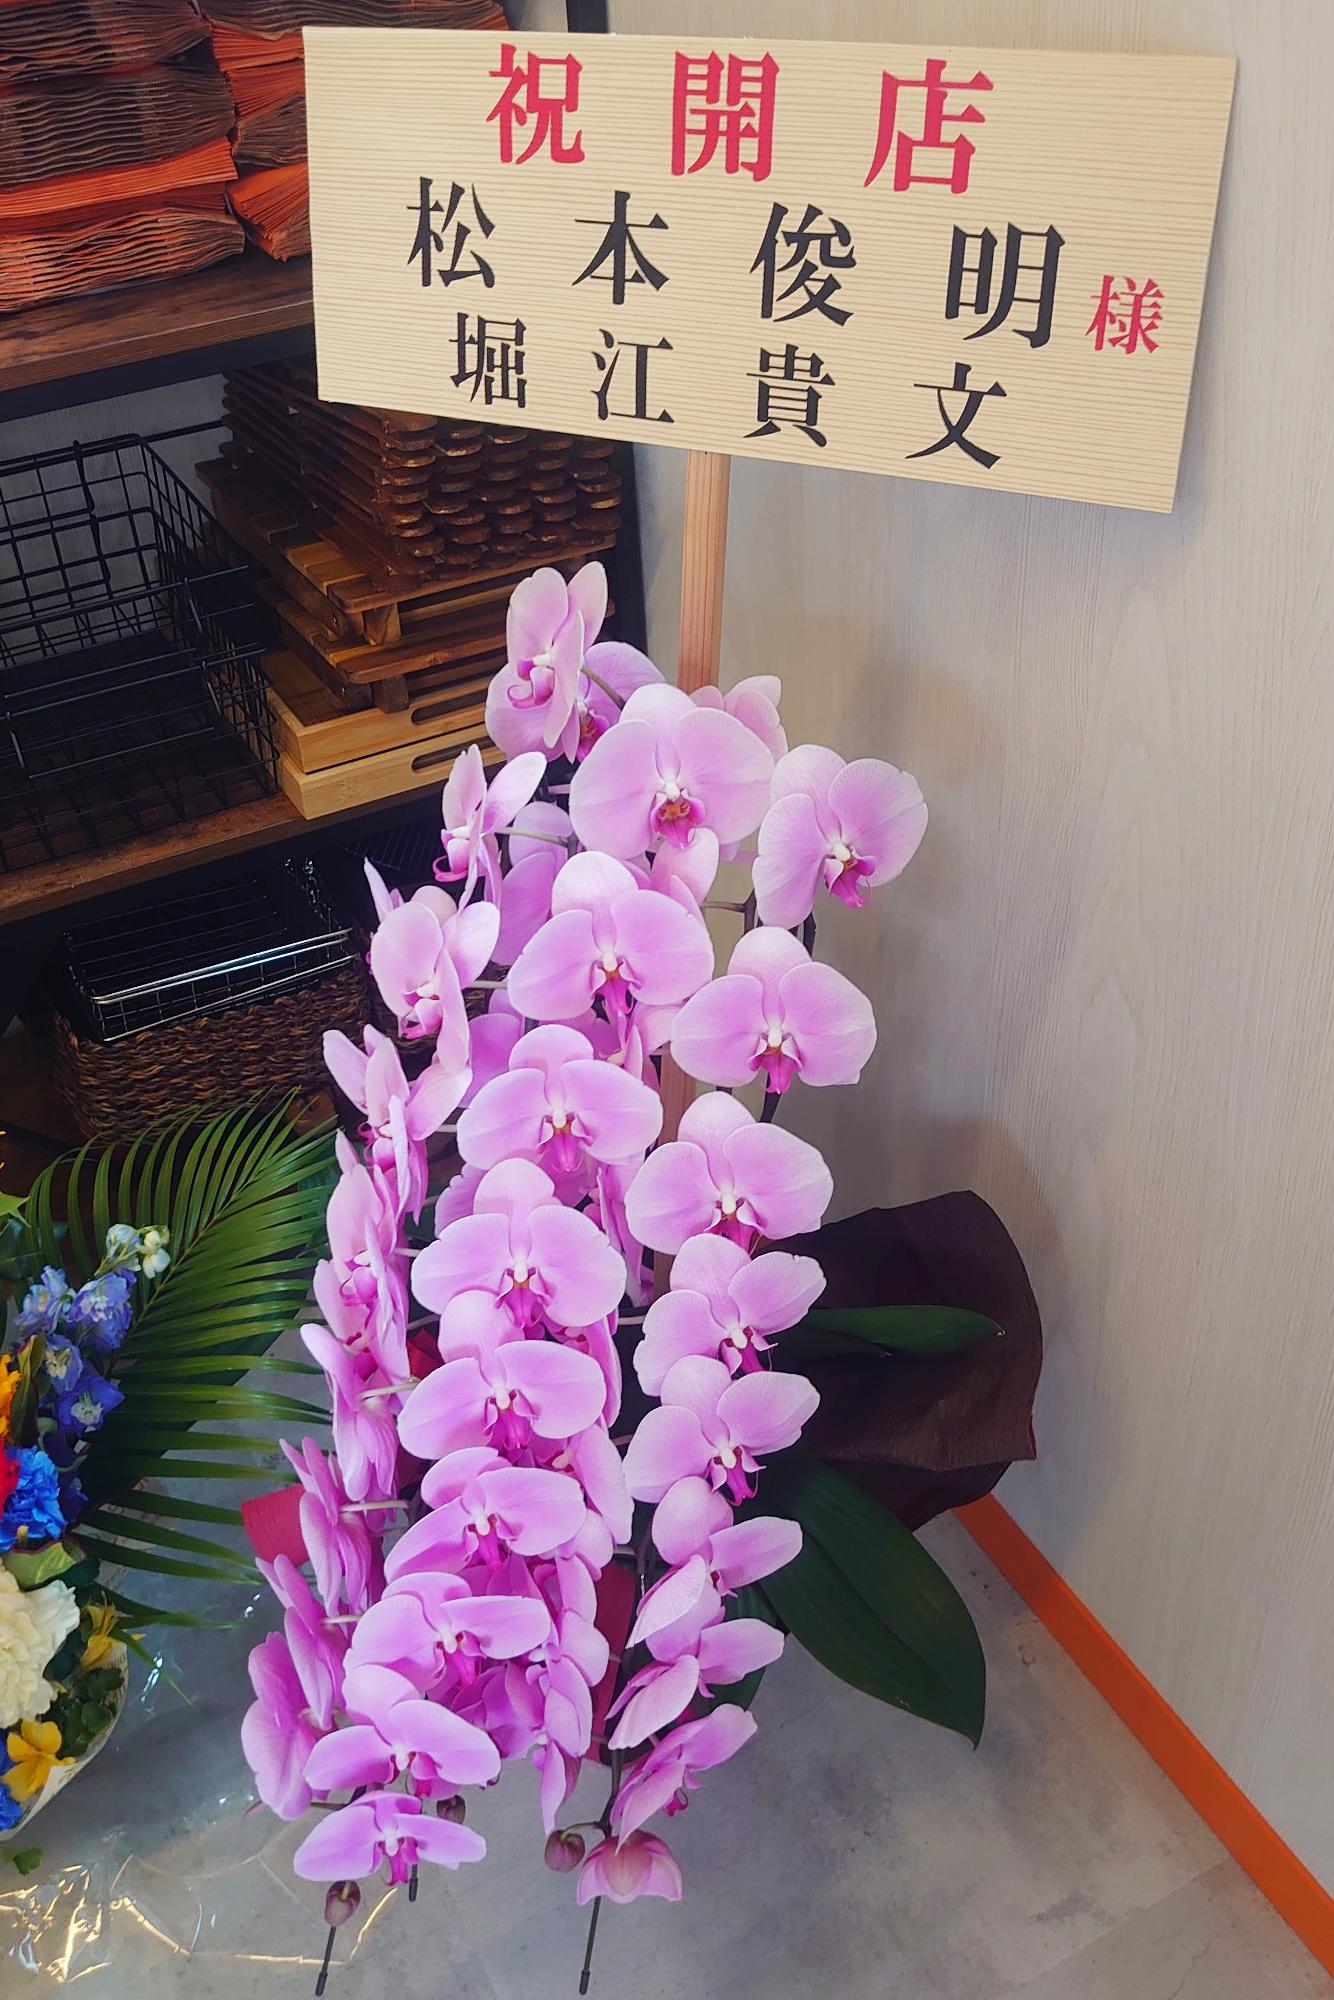 堀江貴文さんからのお花がありました。